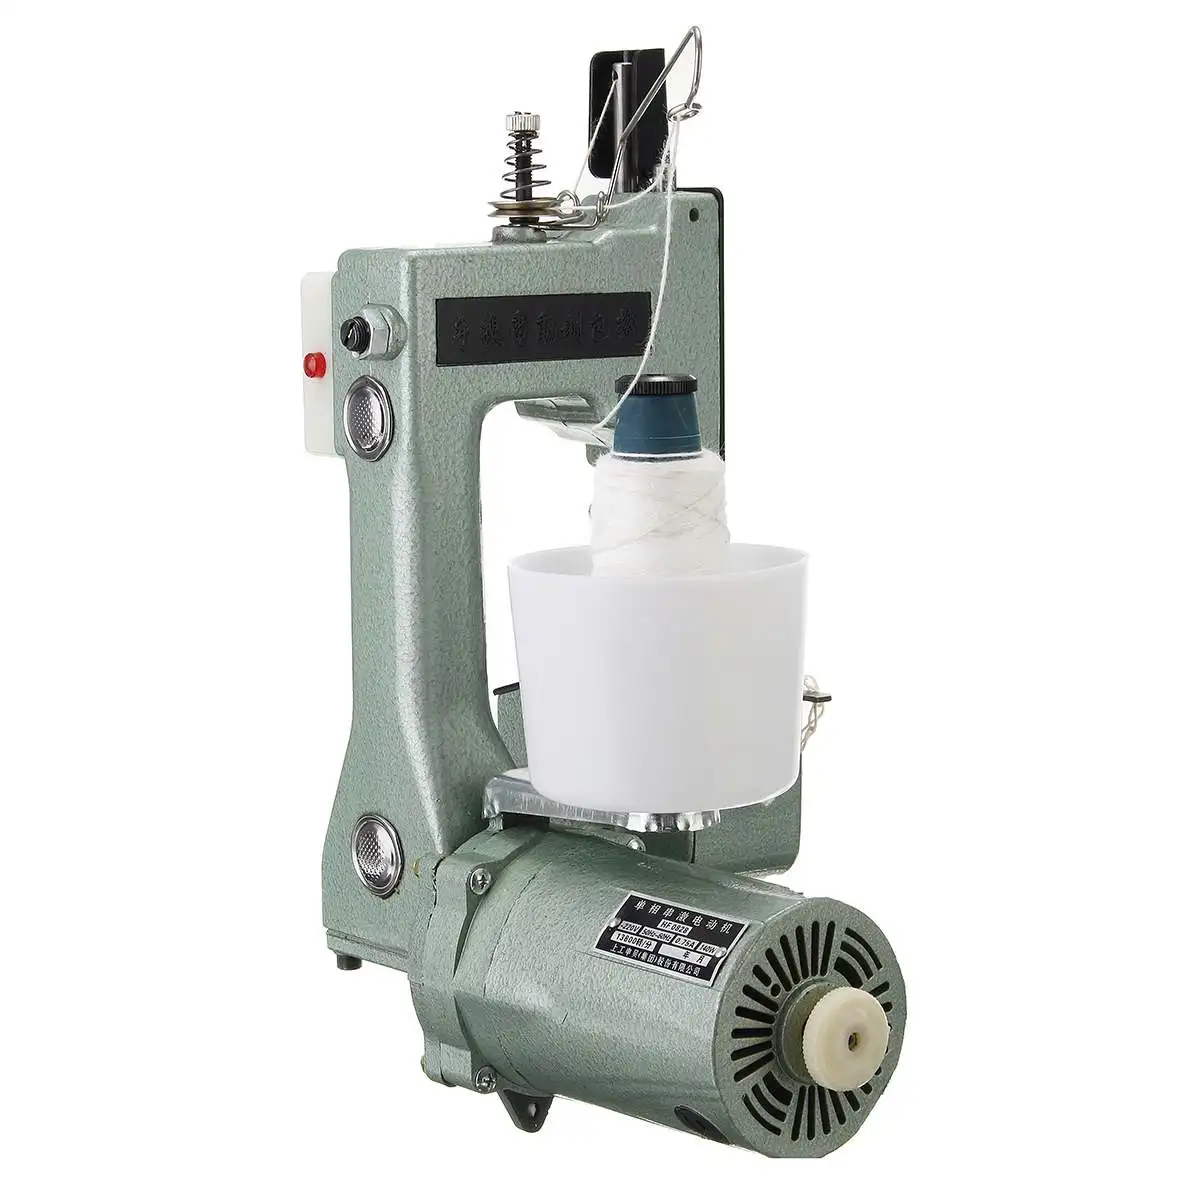 90W 110 V-220 V Портативная электрическая швейная машина для домашнего текстиля, промышленная швейная машина для сшивания мешков